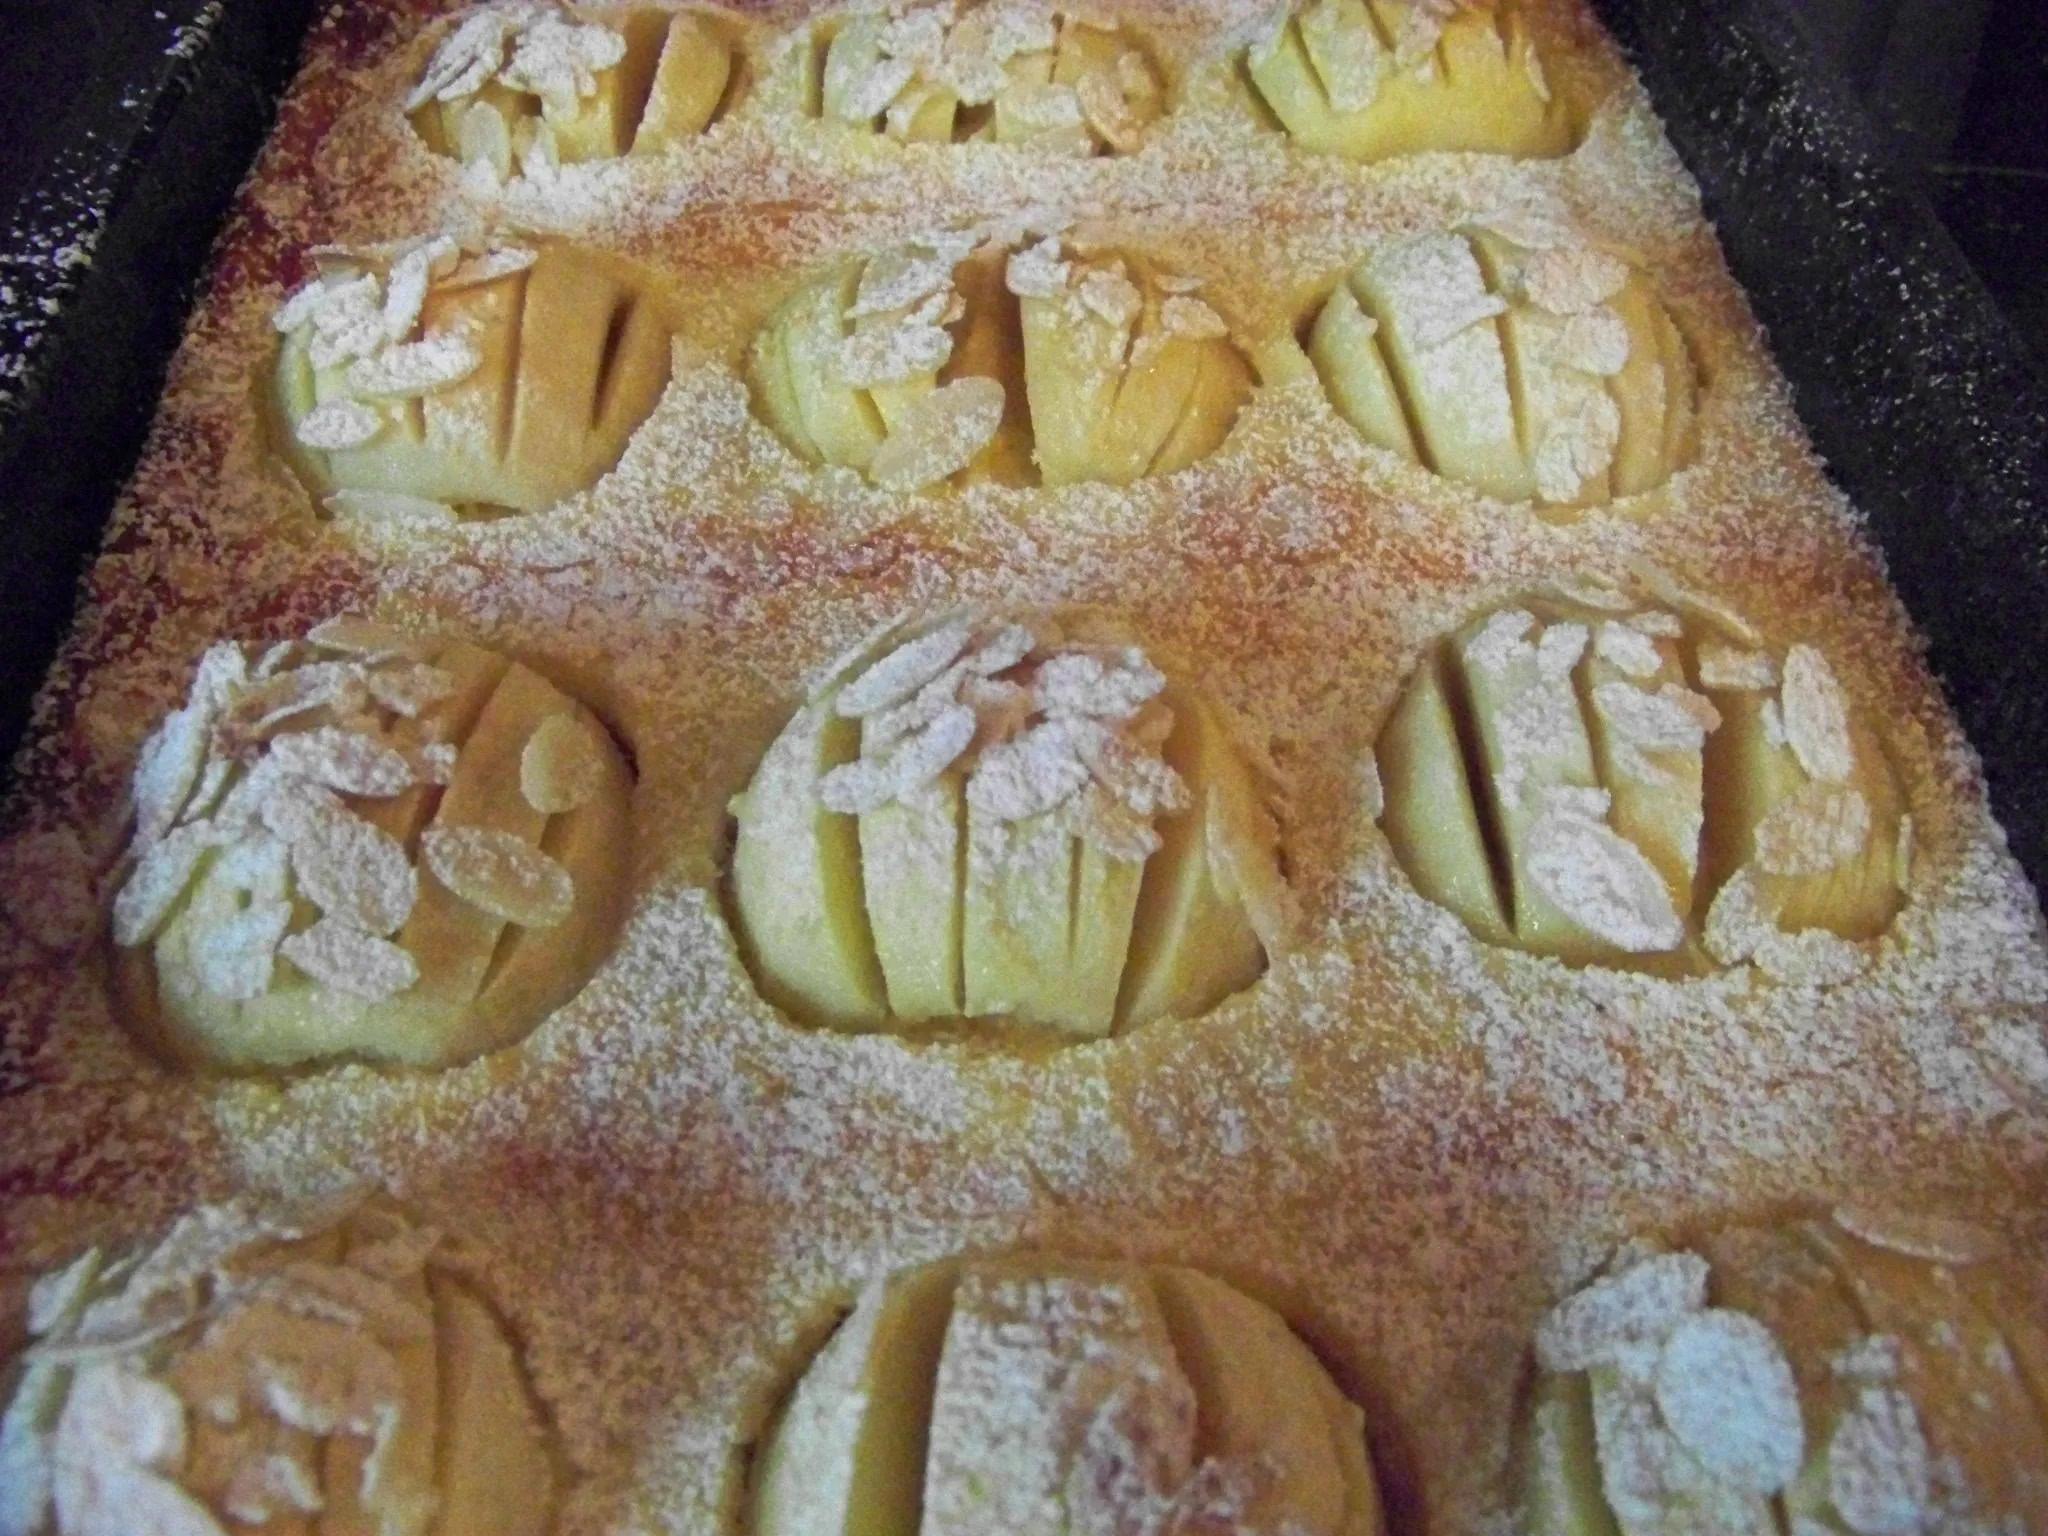 Apfelkuchen vom Blech mit Rahmguss und Mandeln | www.pfalz-info.com